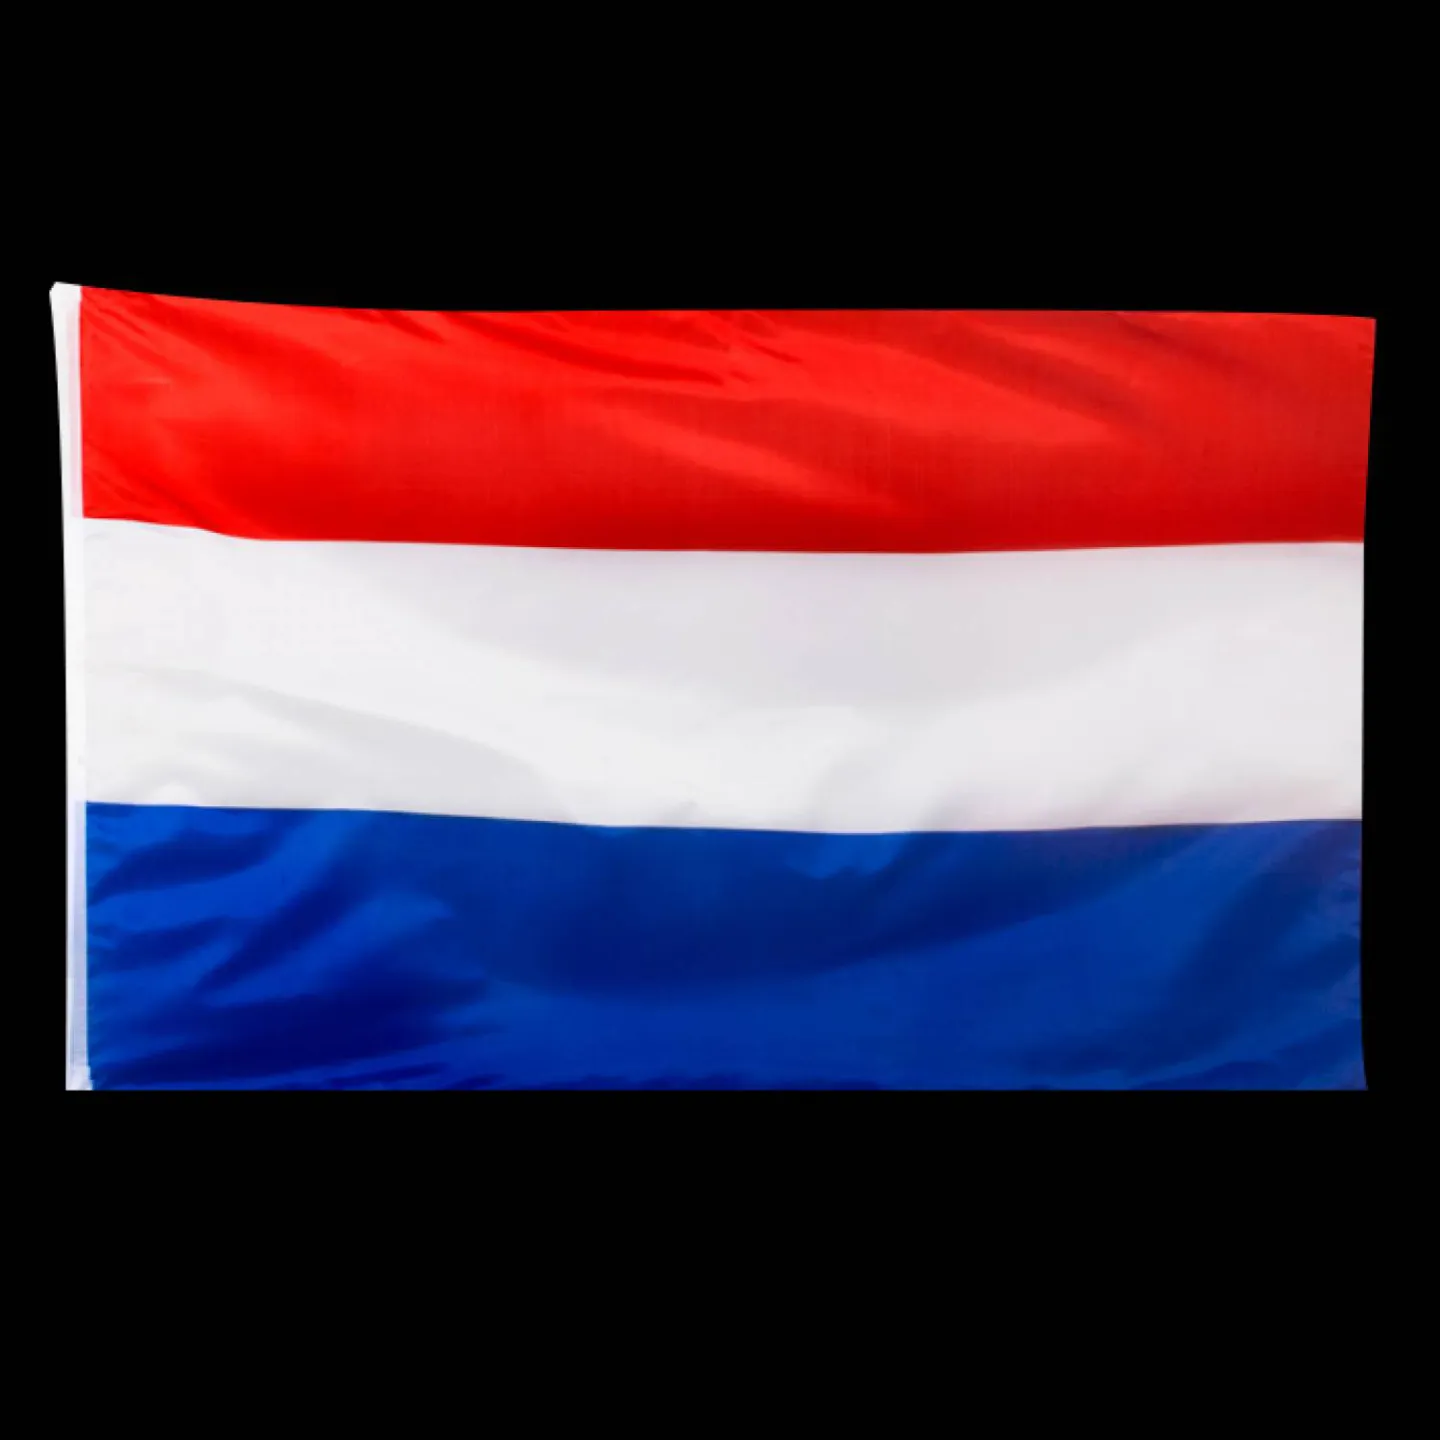 nederlandse vlag 150cm x 90cm.